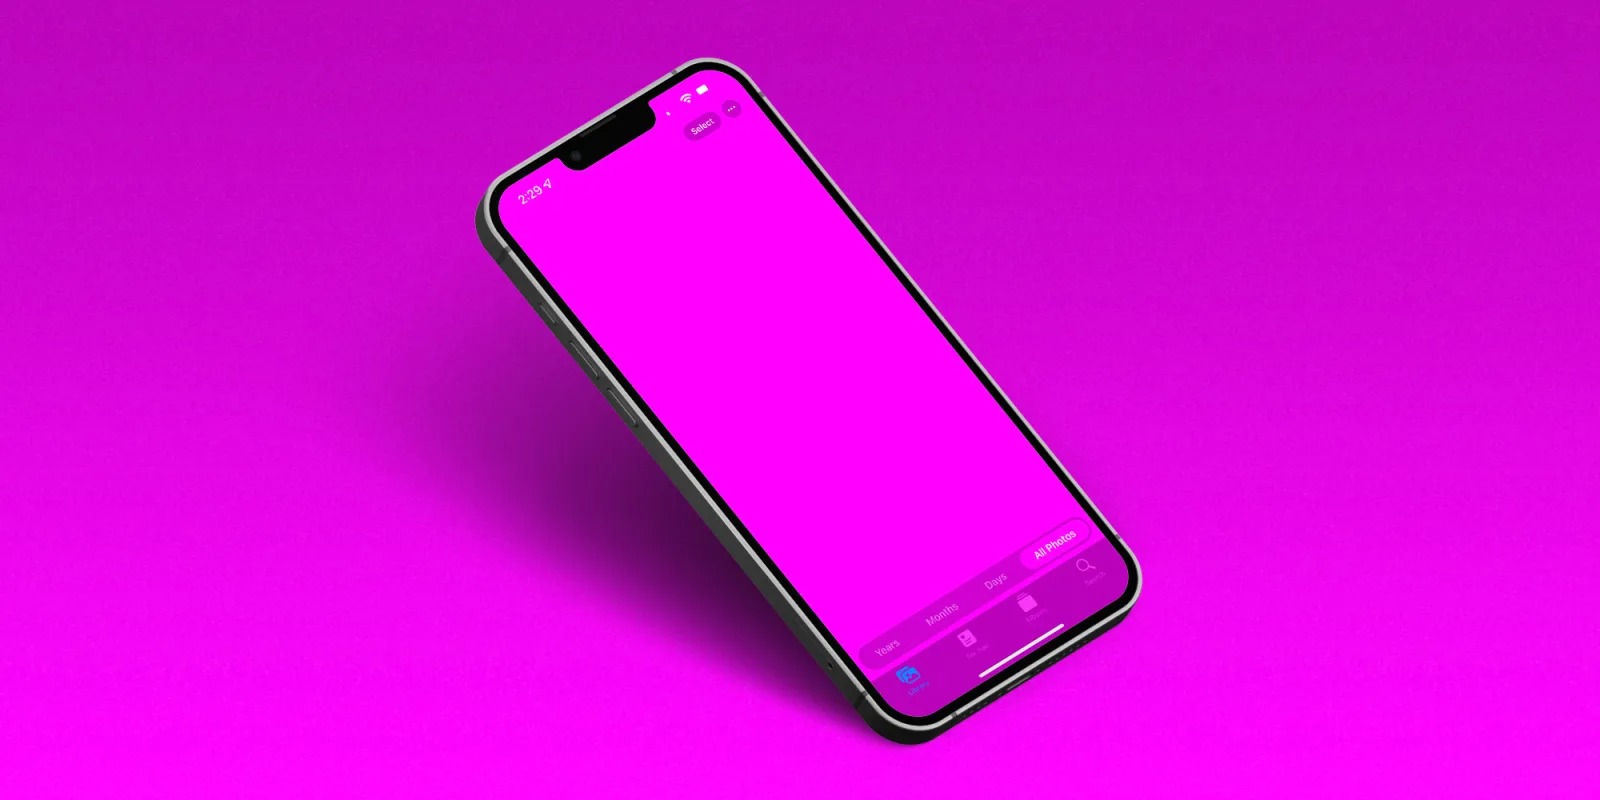 Hướng dẫn sửa lỗi màn hình iPhone 13 chuyển sang màu hồng, gây treo máy